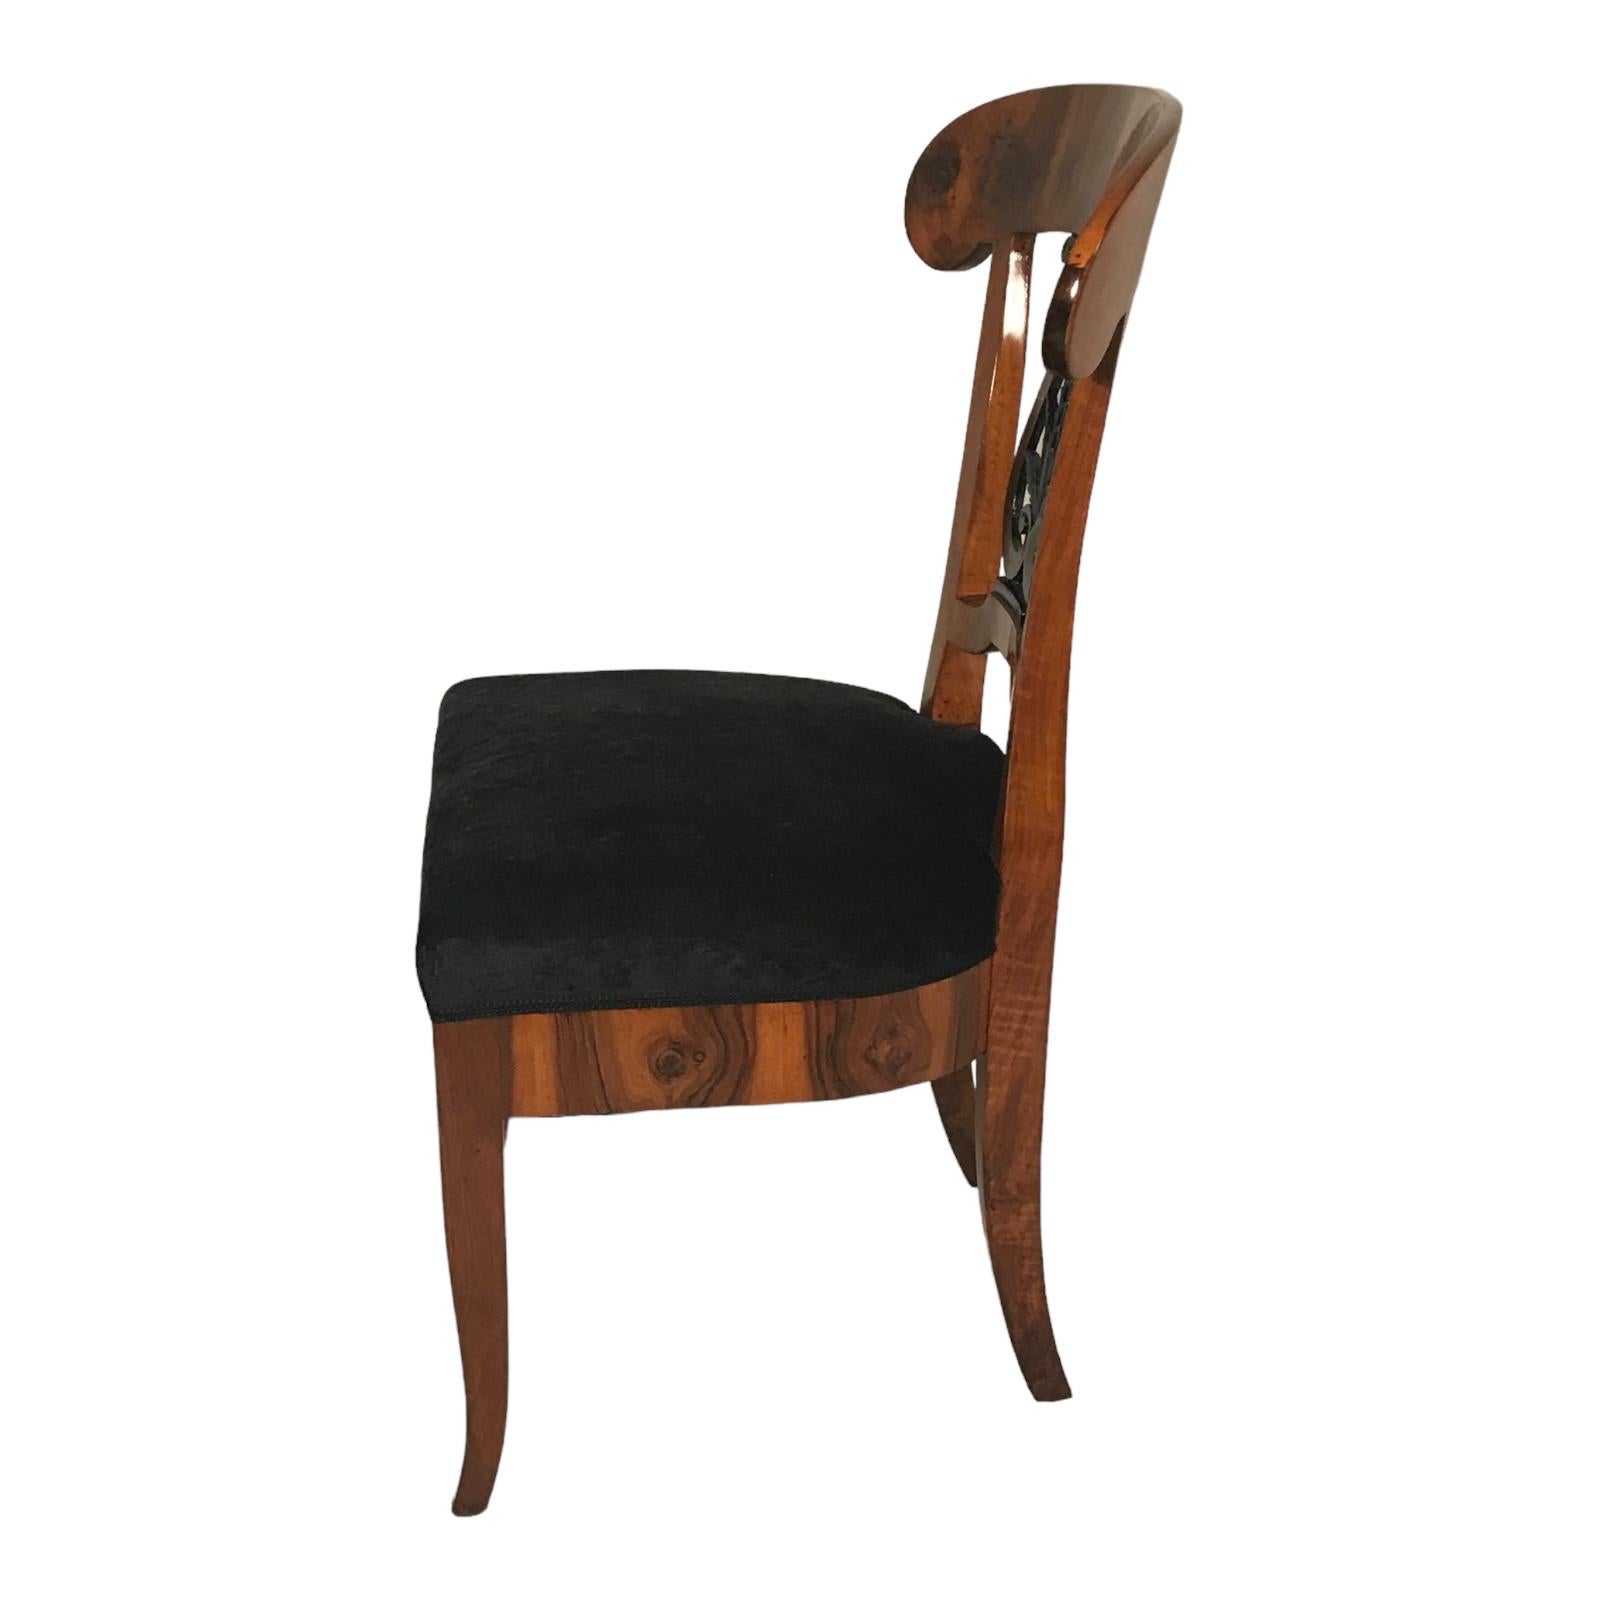 Découvrez notre superbe paire de chaises Biedermeier originales, originaires du sud de l'Allemagne des années 1820. Fabriquées avec un superbe placage de noyer, ces chaises sont dotées d'un dossier exquis accentué par un décor de feuilles ébonisées